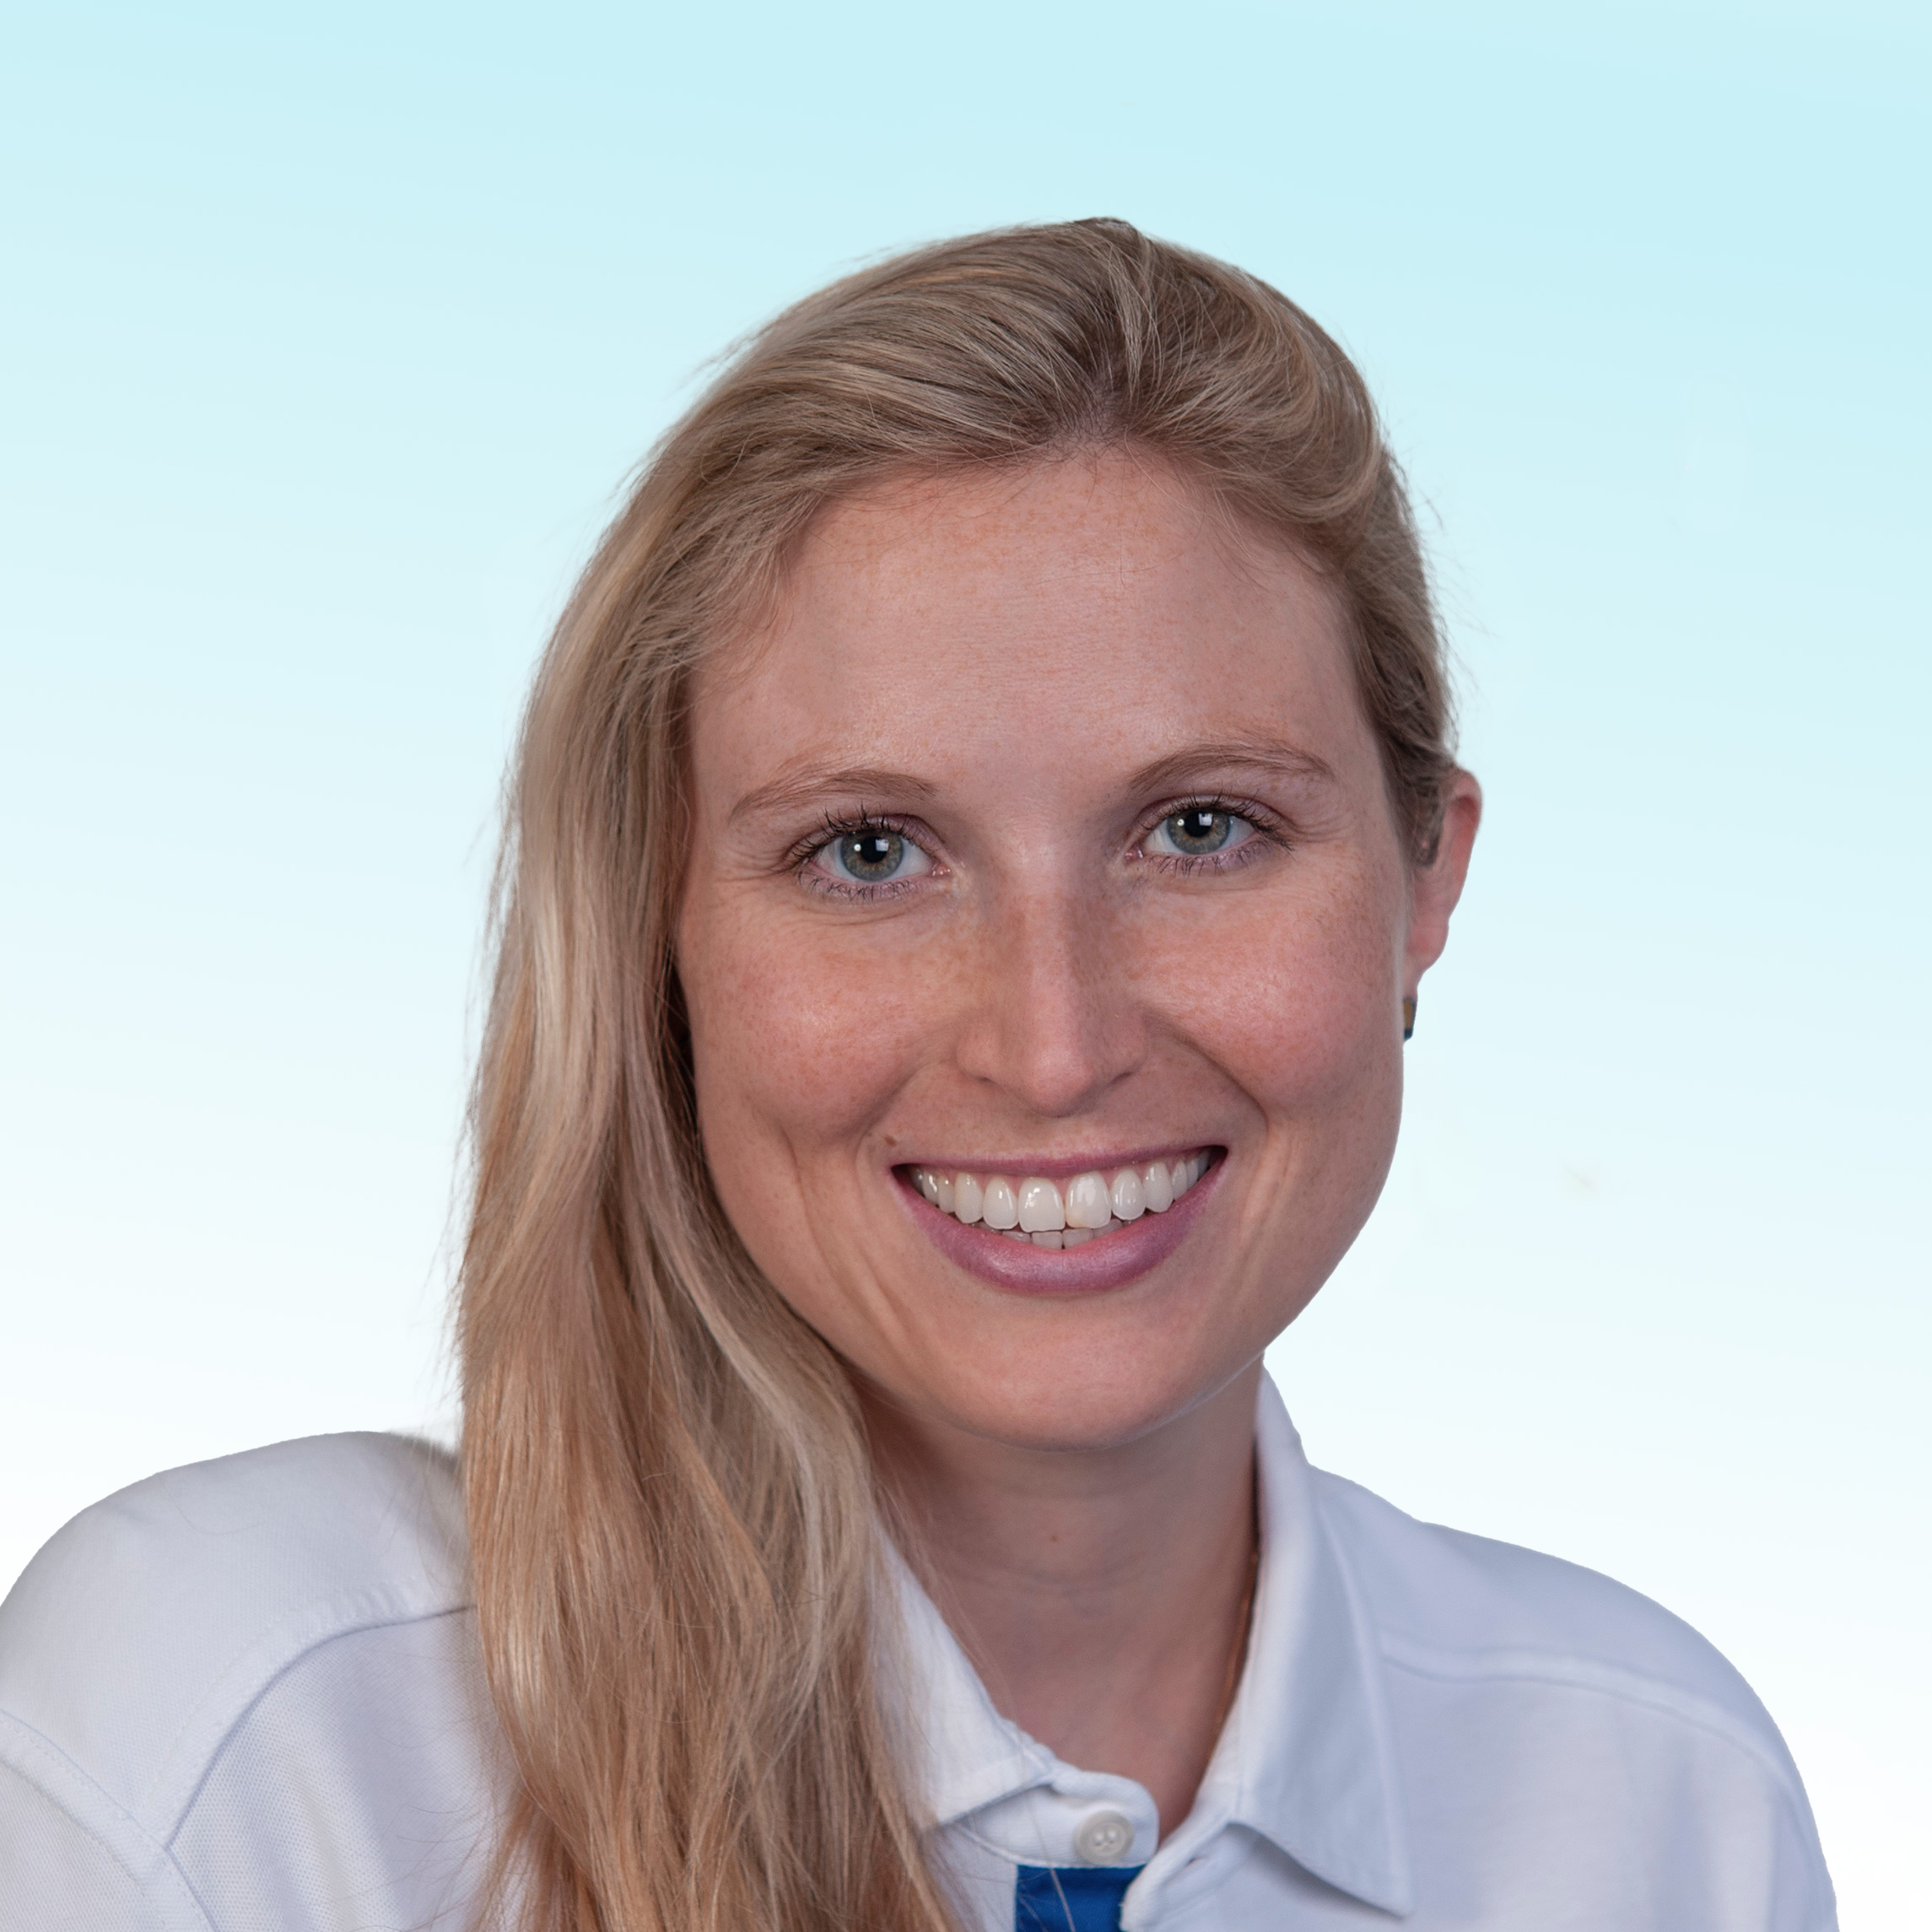 Dermatologue, Dr. med. dent. Fabienne Bosshard-Gerber